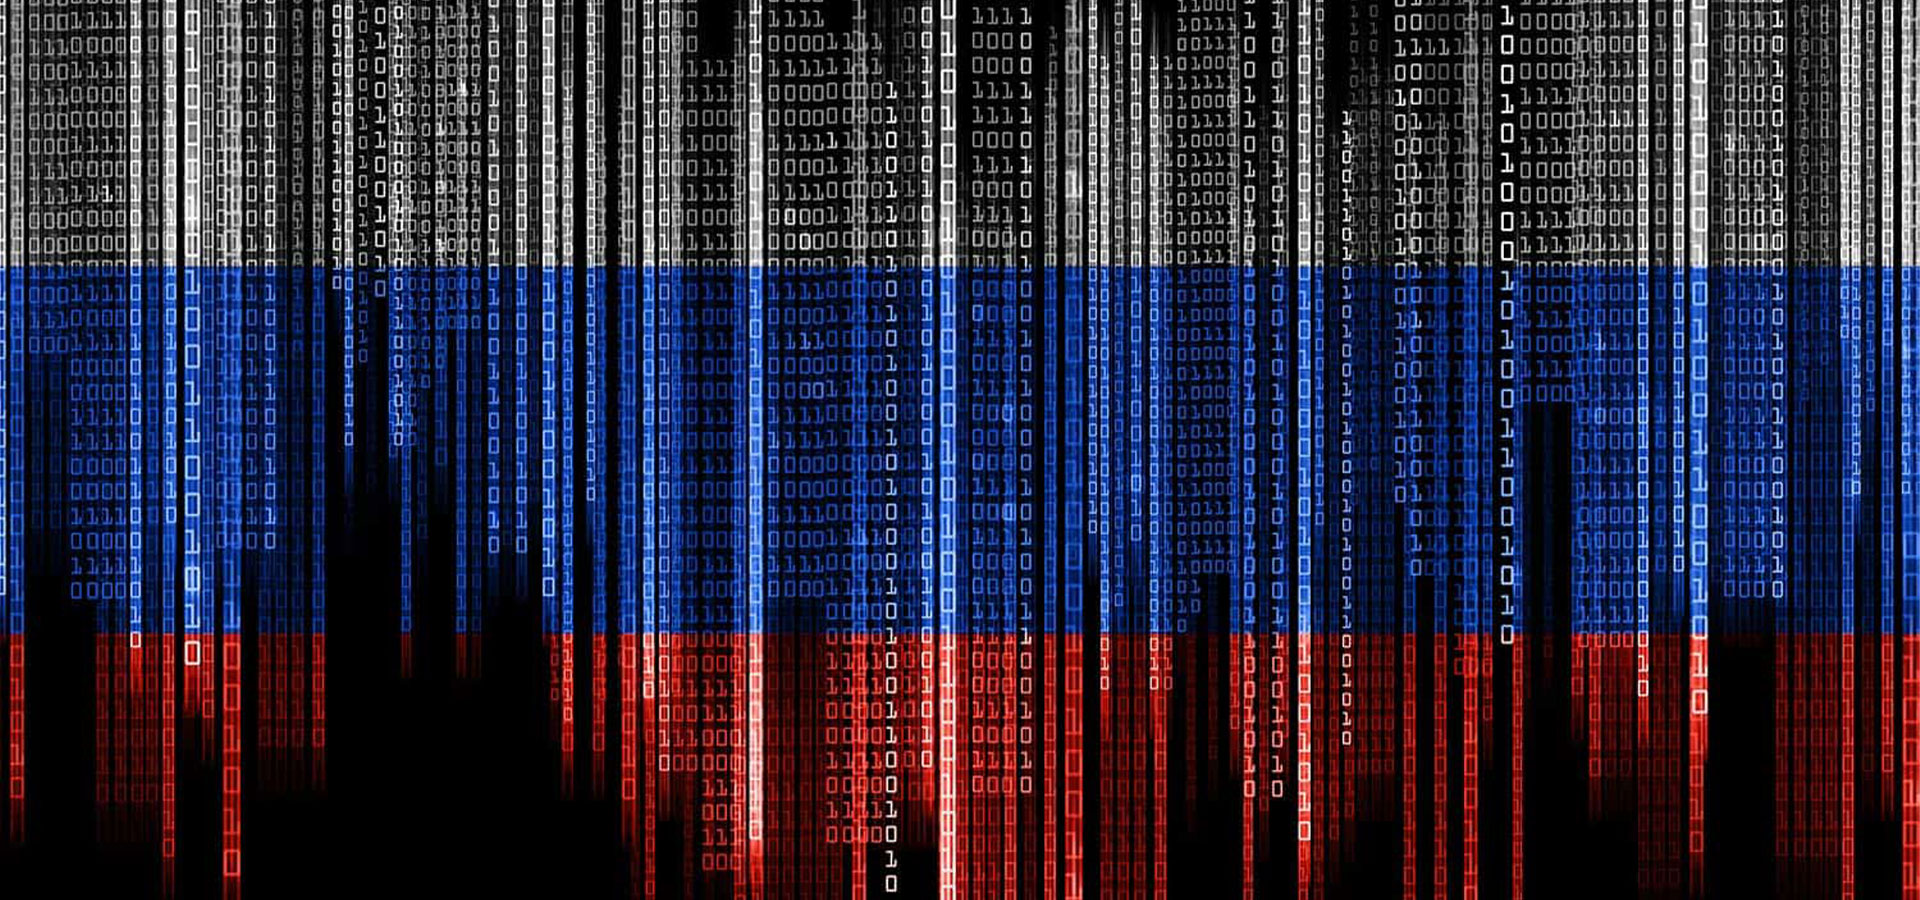 russia supply chain attack